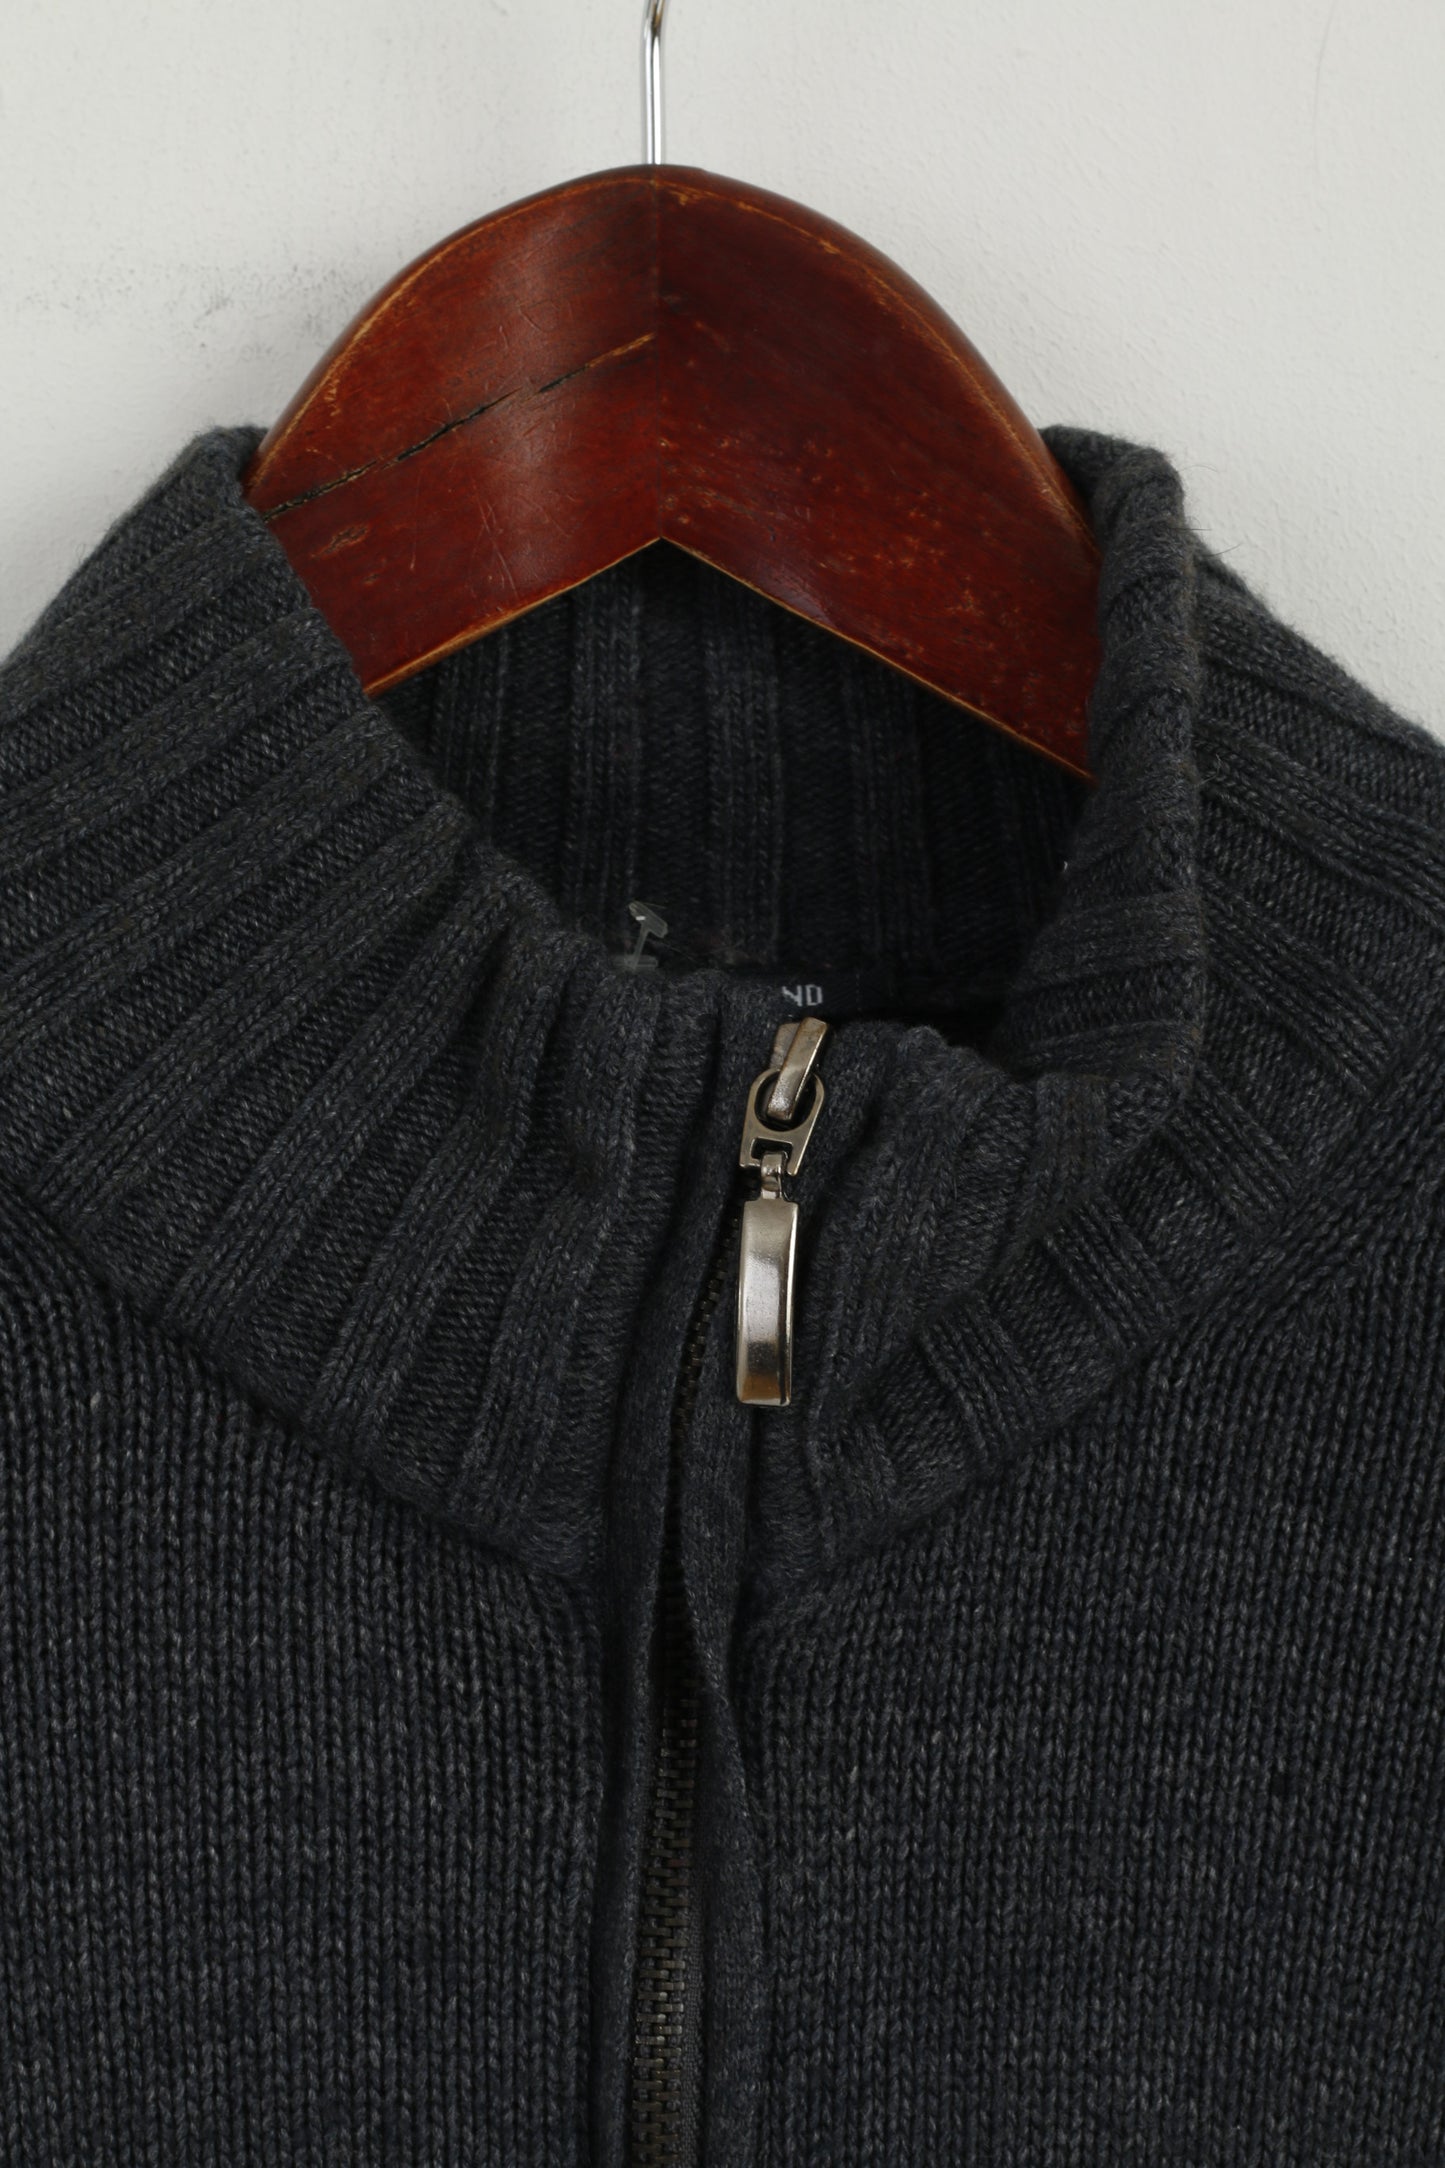 Maglione esclusivo New Zealand Auckland da uomo M maglione grigio con cerniera intera in nylon